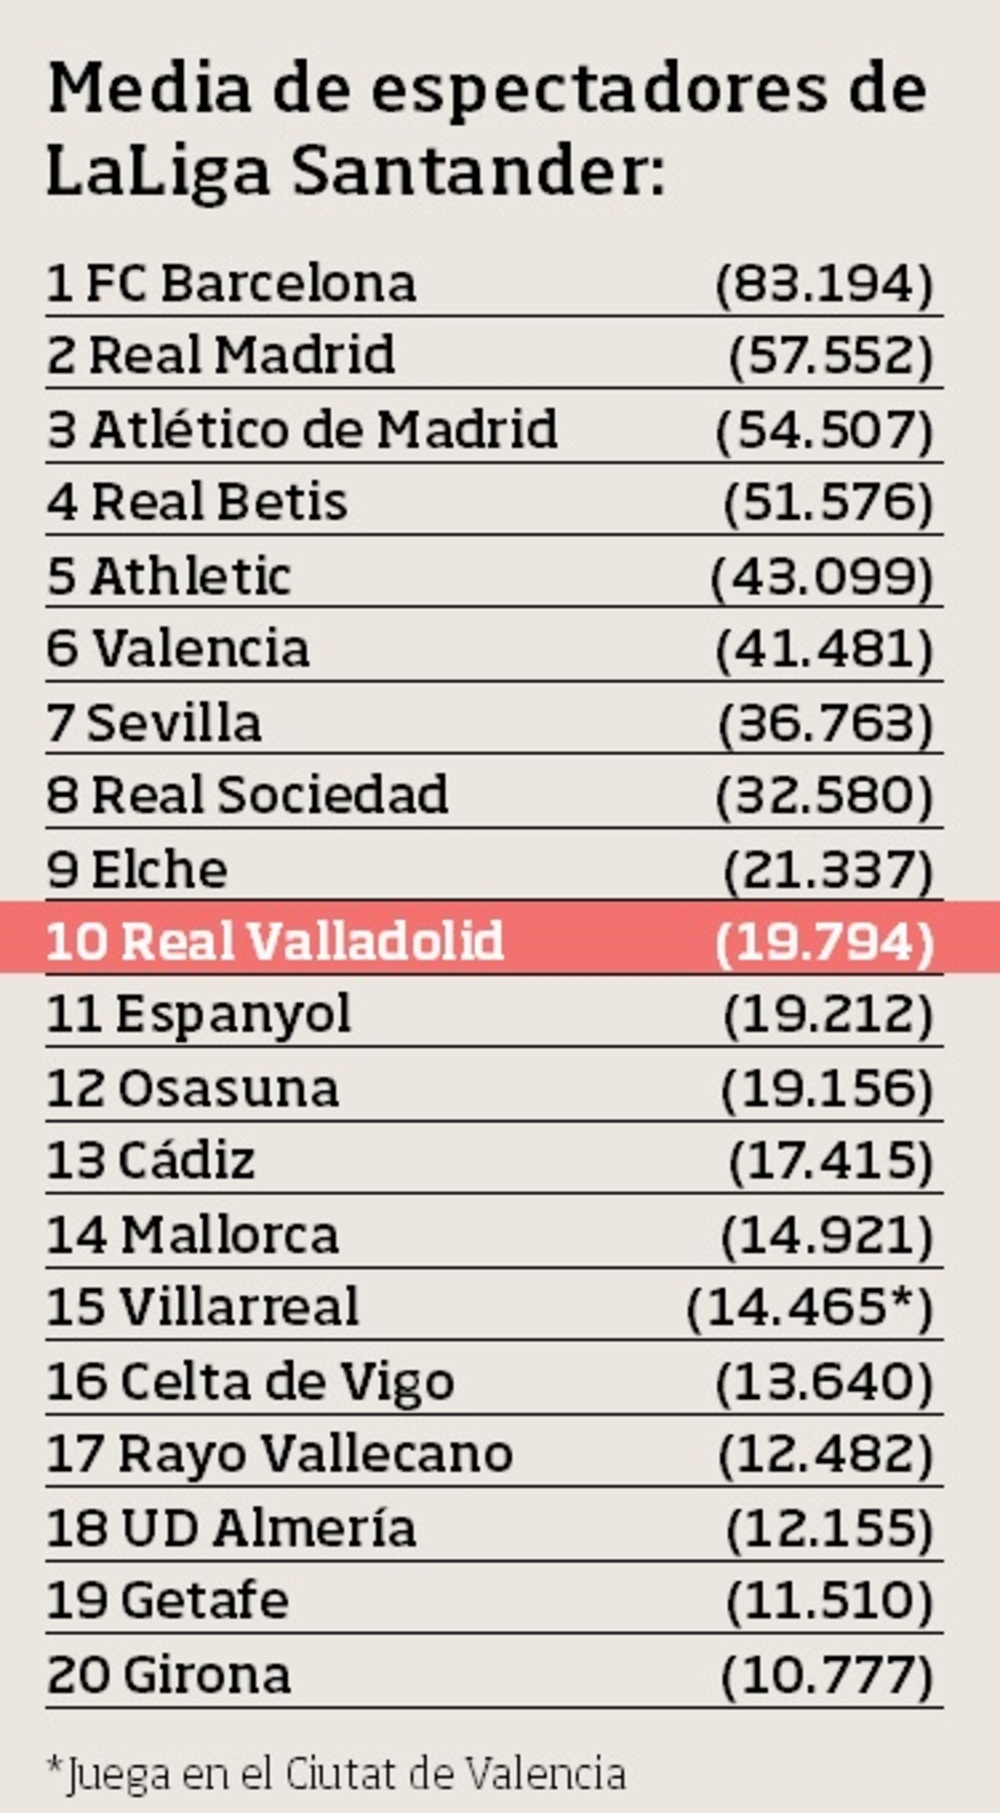 Media de espectadores en lo que va de temporada en LaLiga Santander.